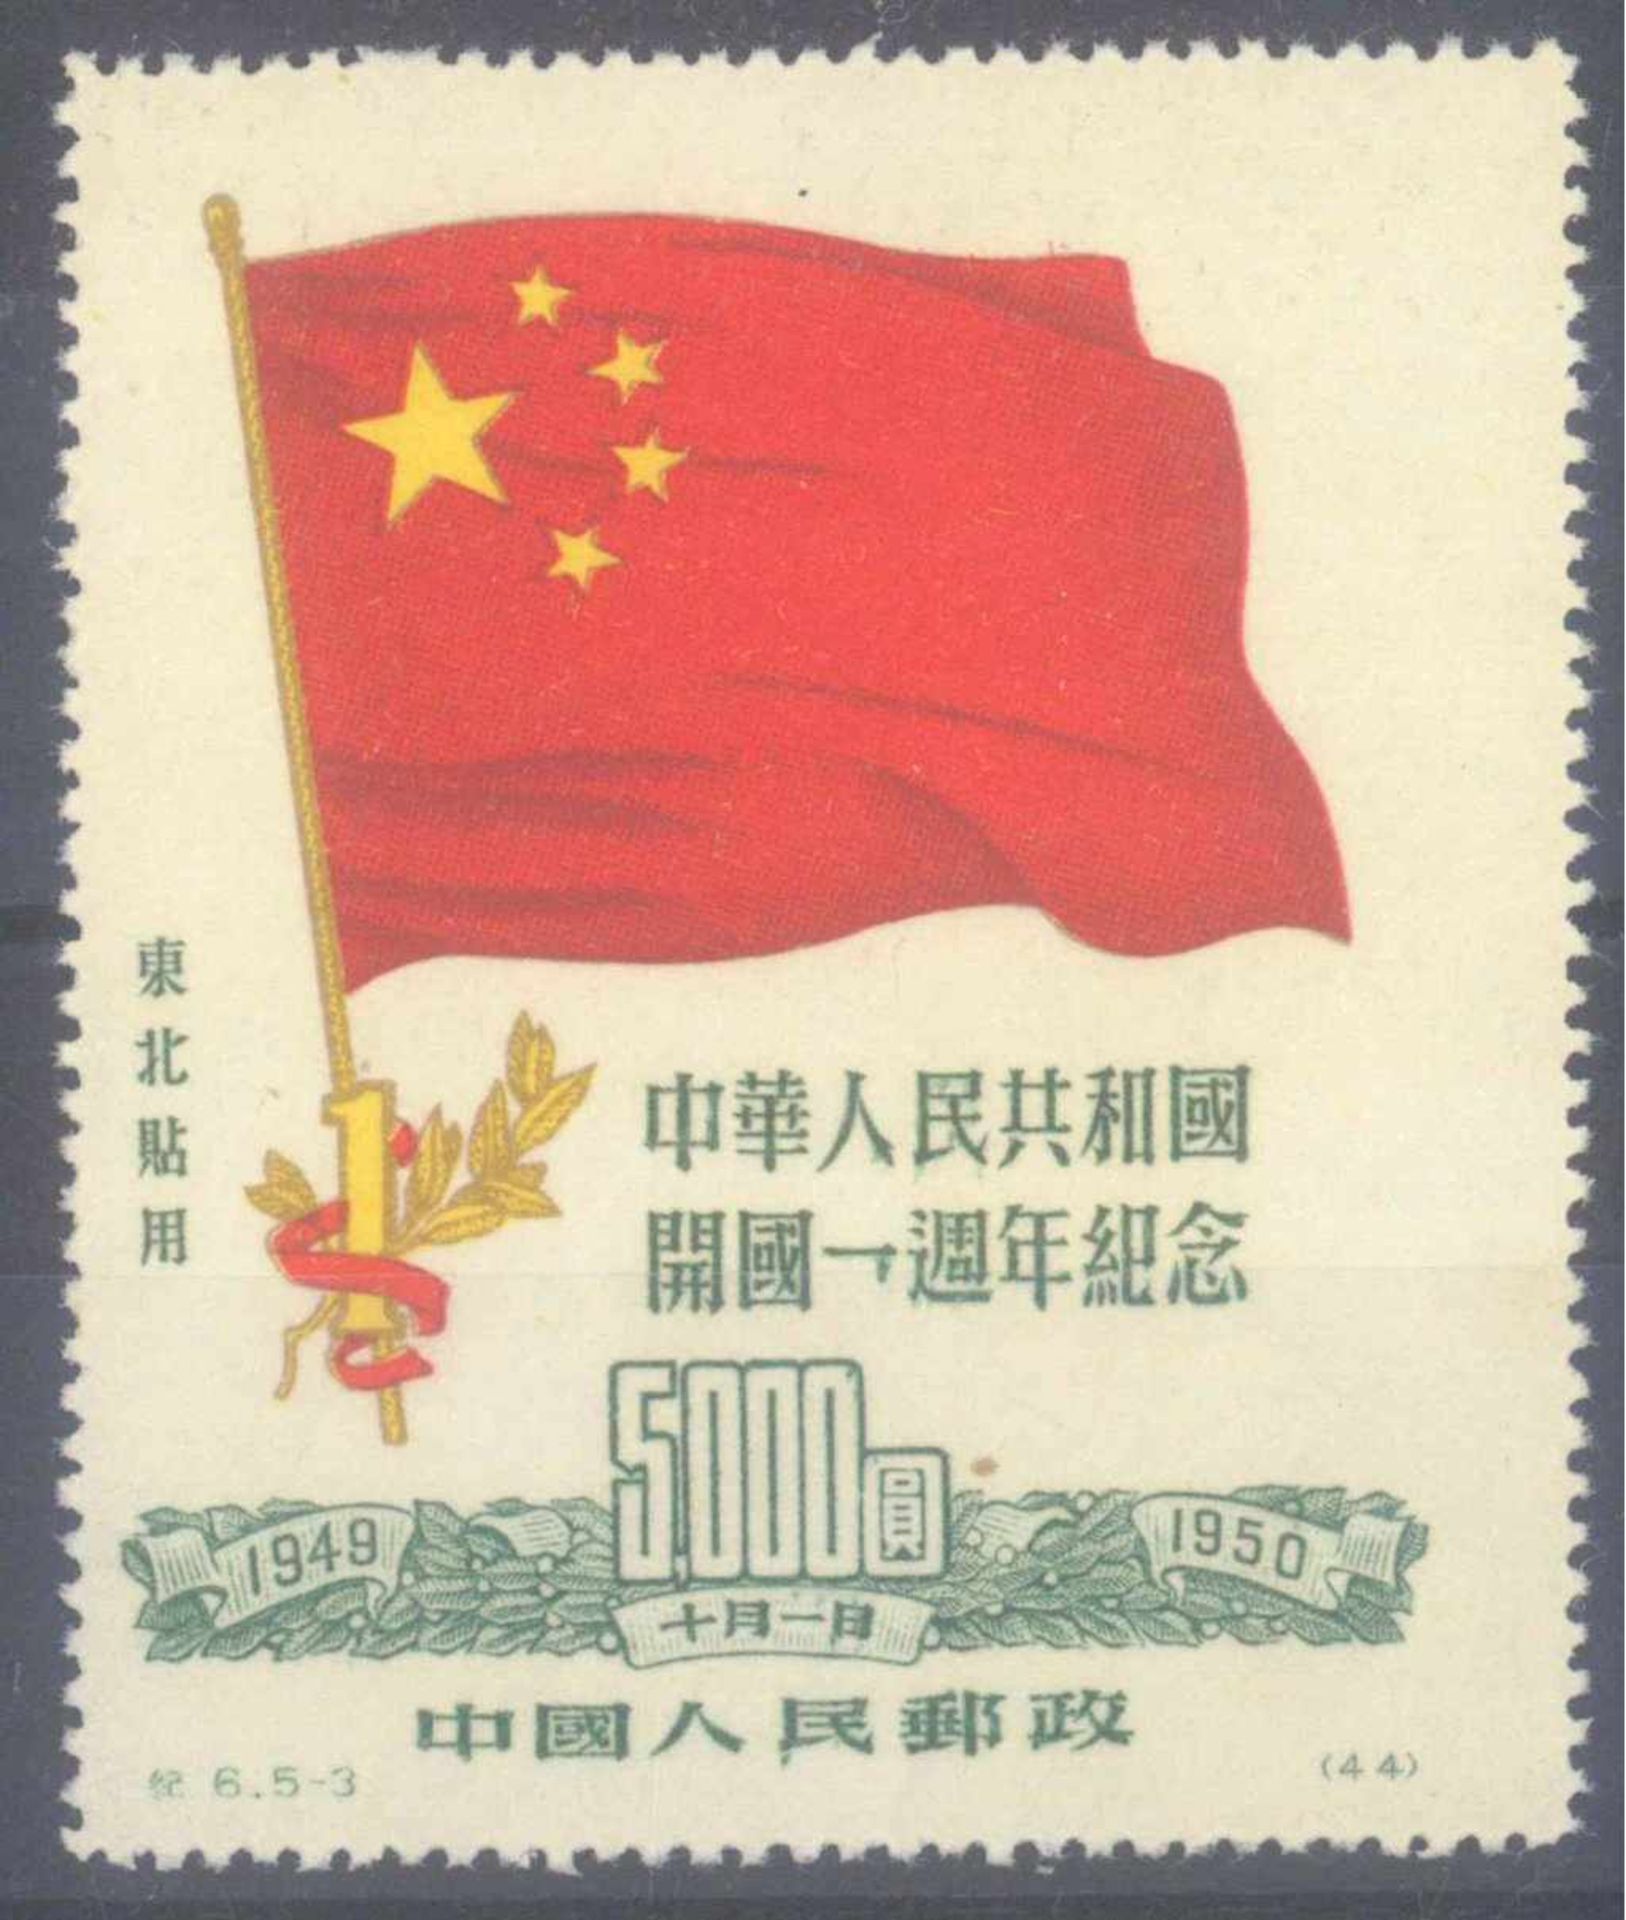 CHINA - NORDOSTCHINA 1950, Ein Jahr VolksrepublikMichelnummer 181 I, 1. Auflage, ungebraucht Luxus